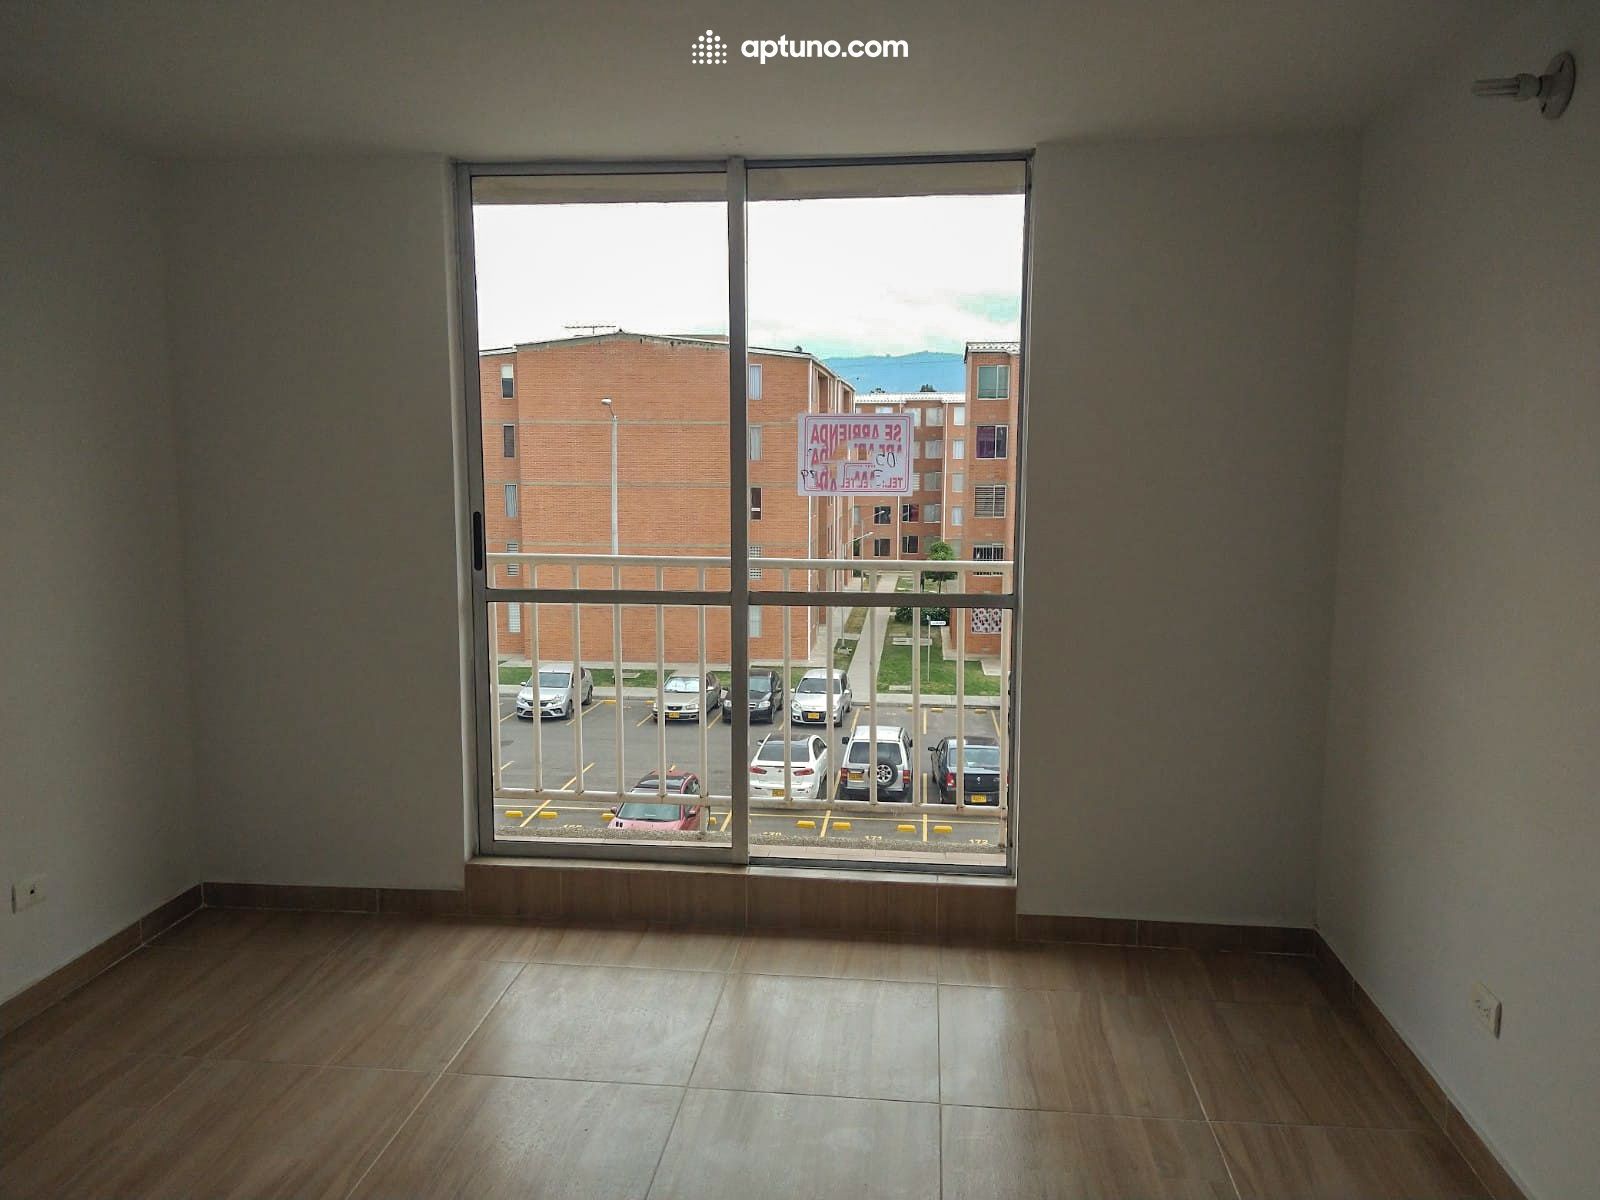 Apartamento en arriendo Tocancipá 55 m² - $ 820.000,00